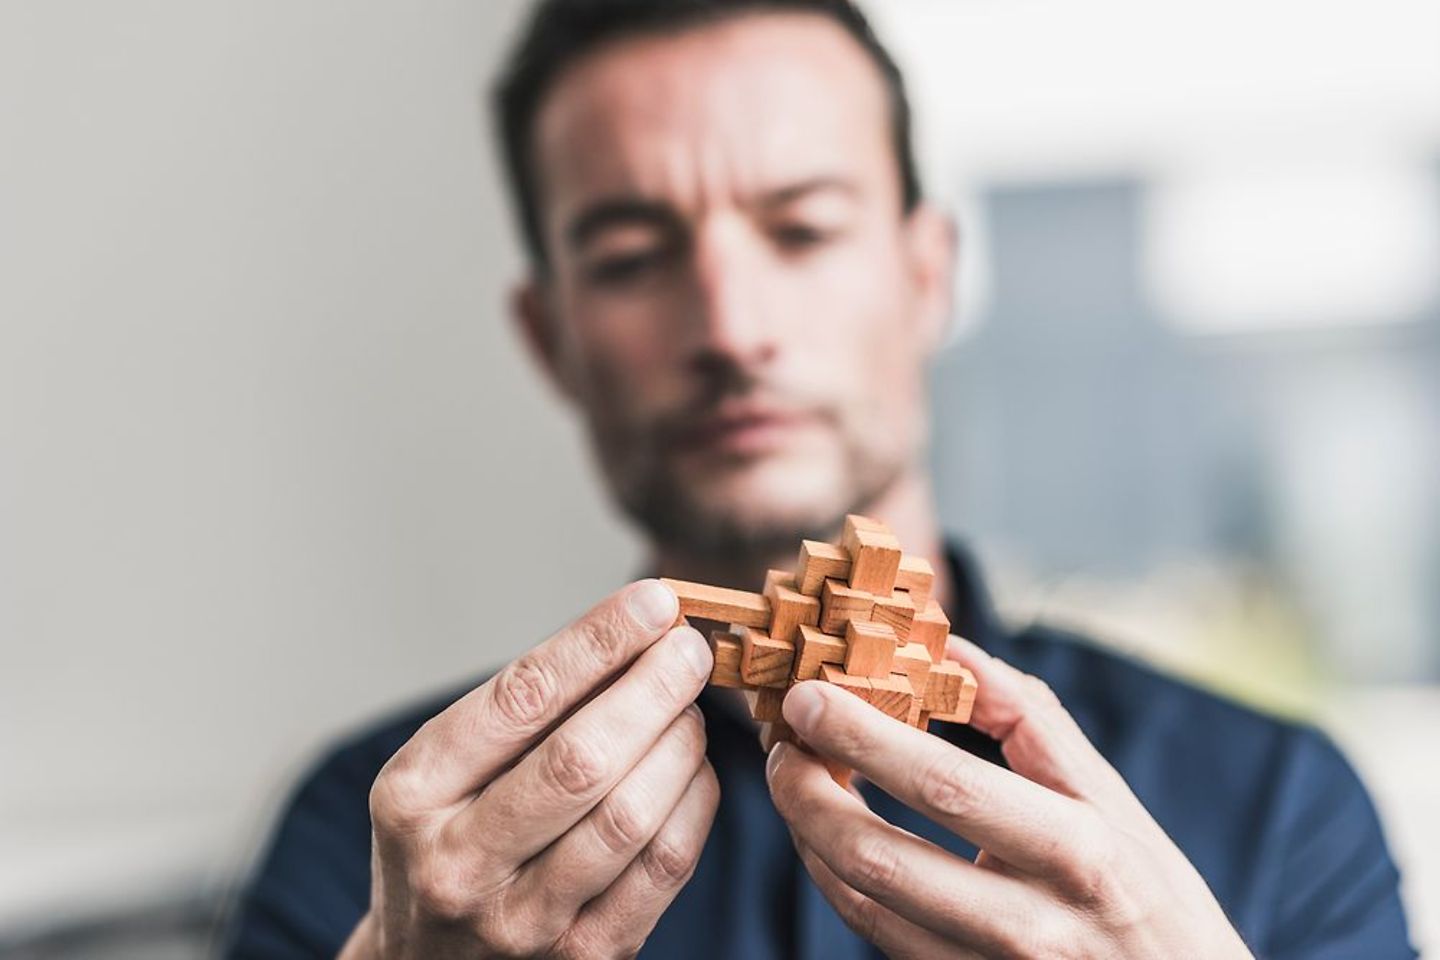  Um homem monta um cubo de madeira - complicado como tornar a IA legalmente conforme